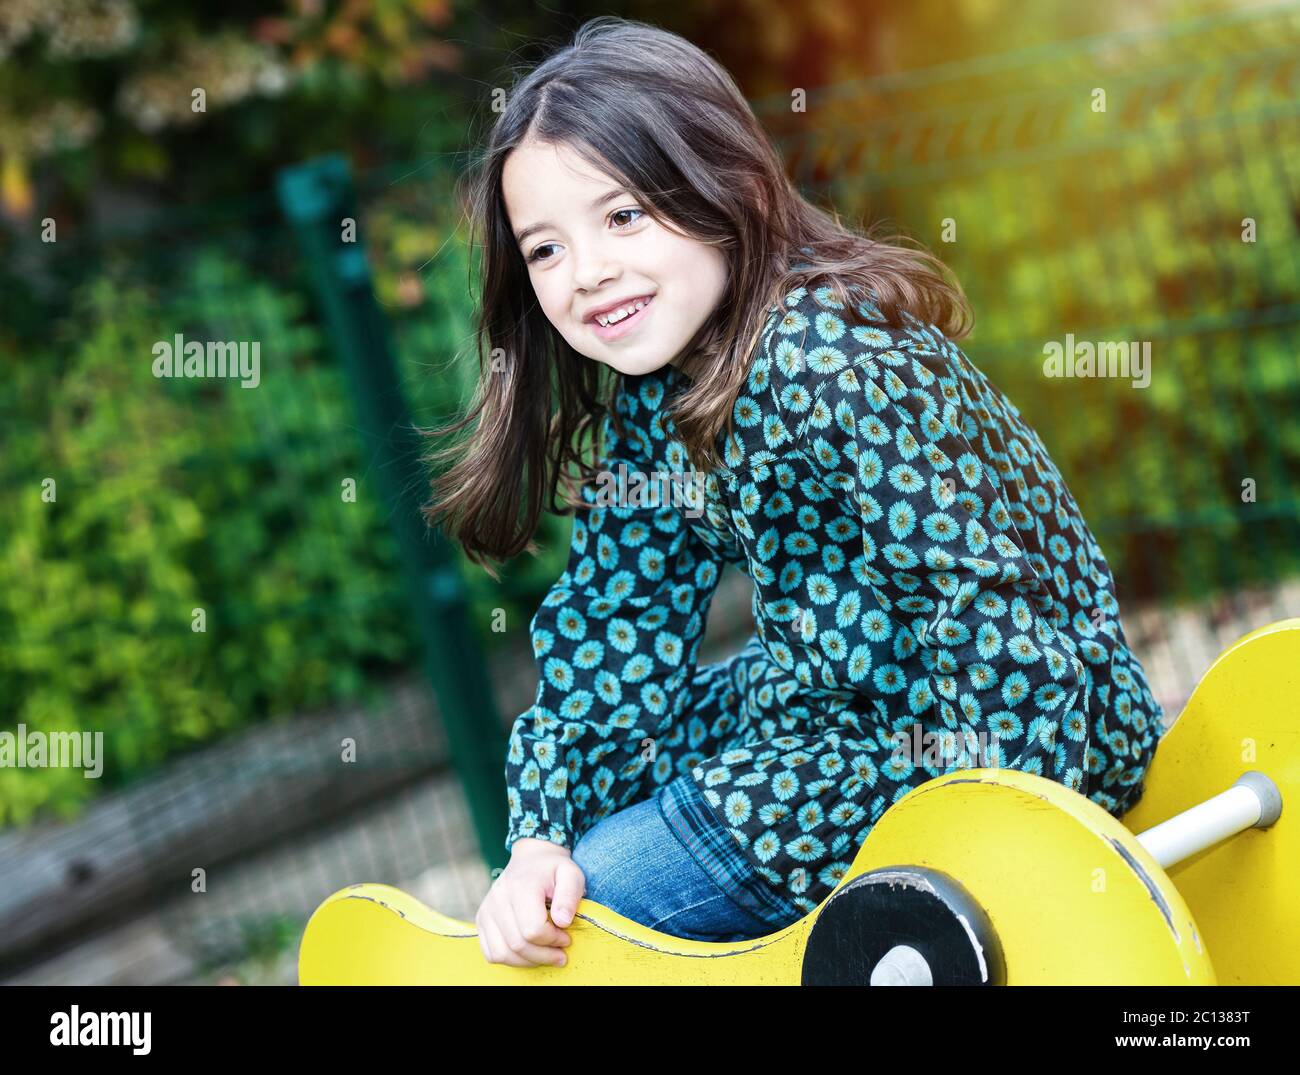 felice ragazza carina nel parco giochi Foto Stock